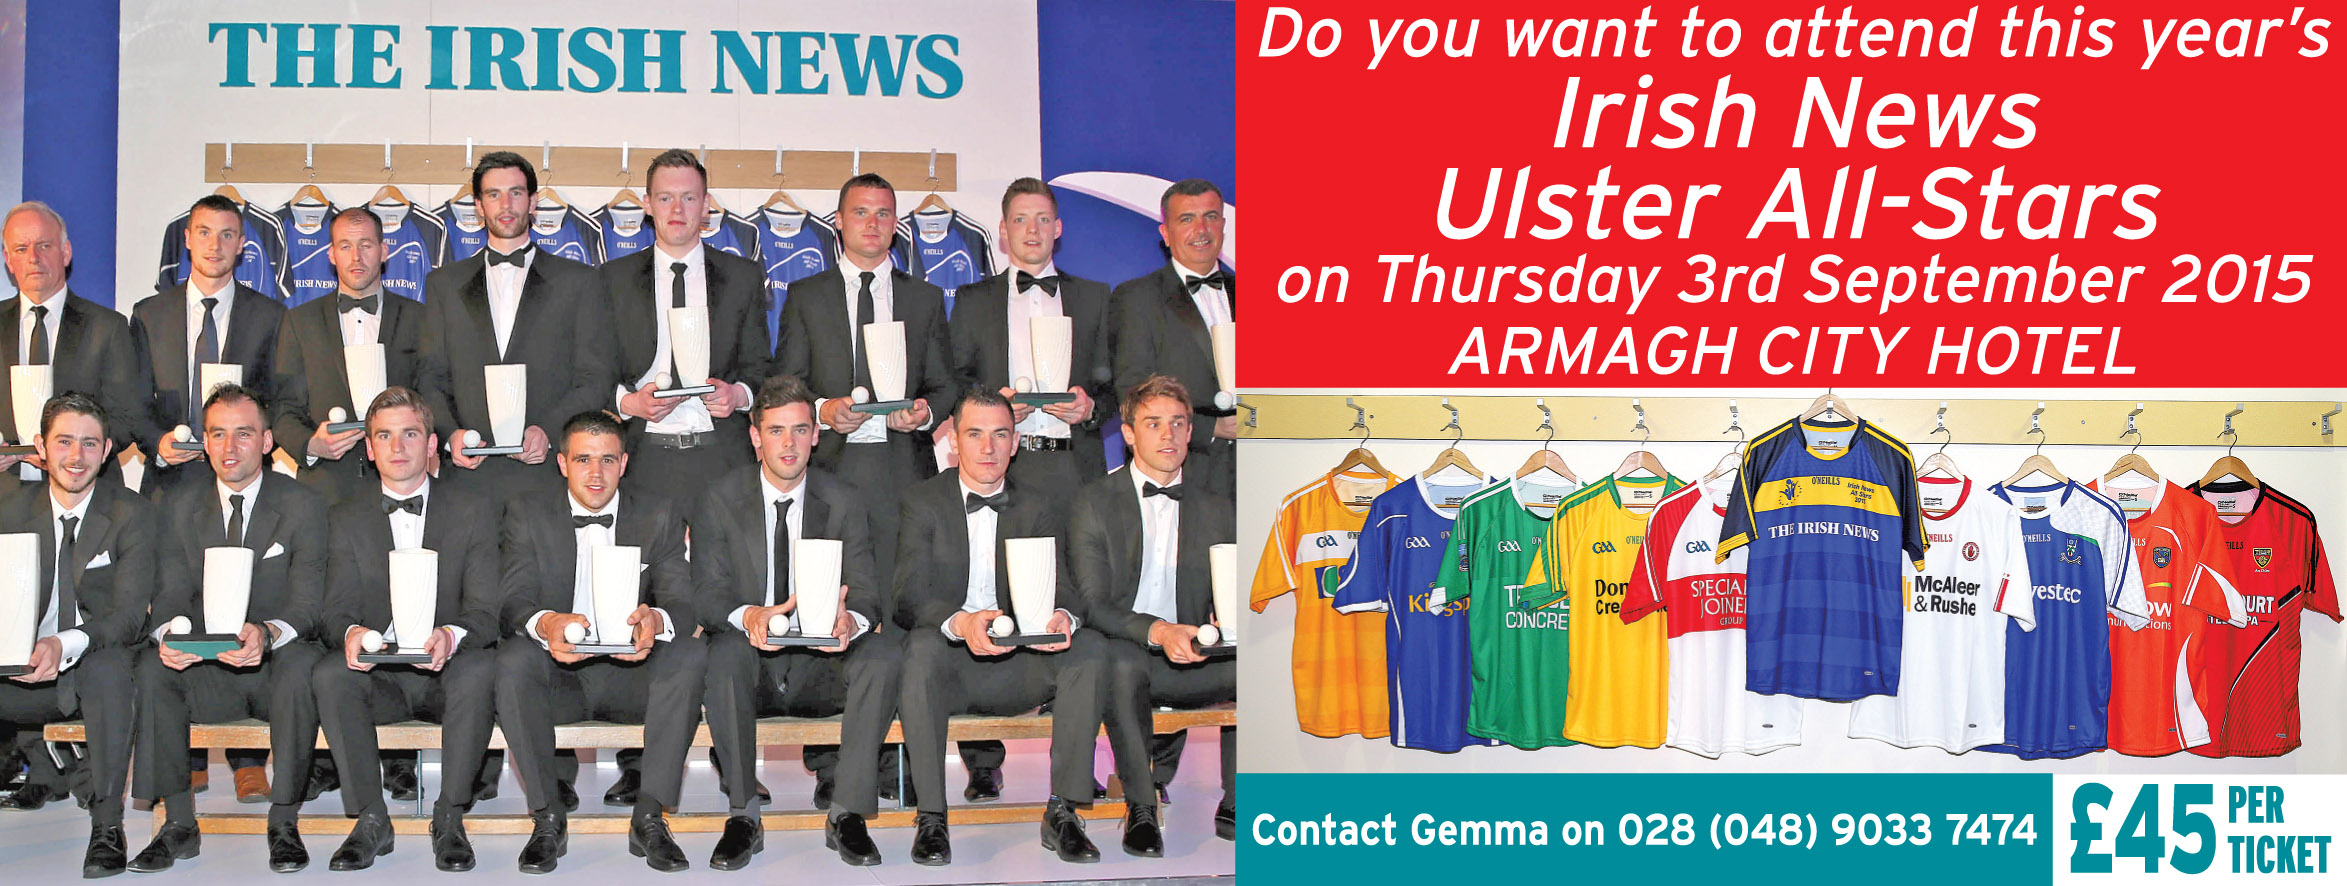 Irish News Ulster All Stars 2015